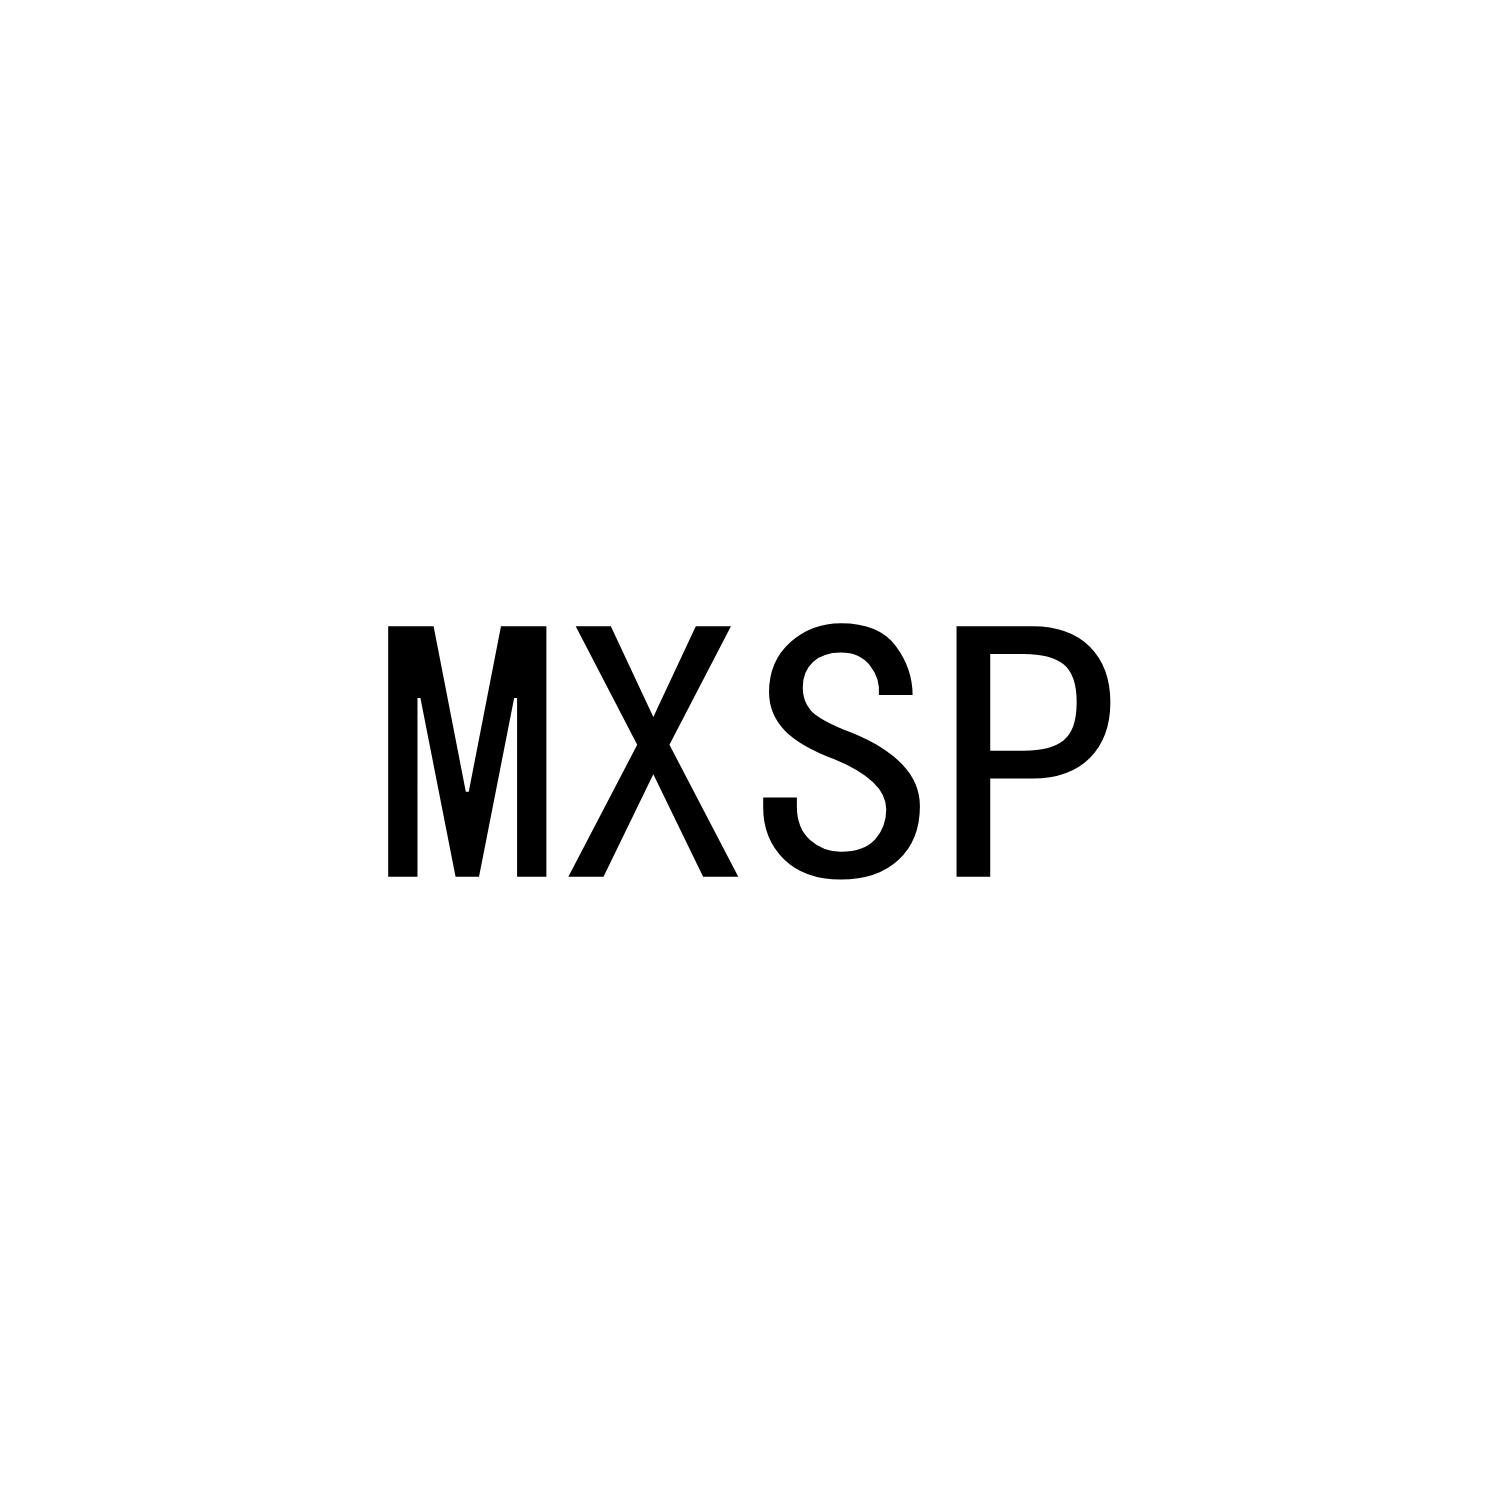 MXSP